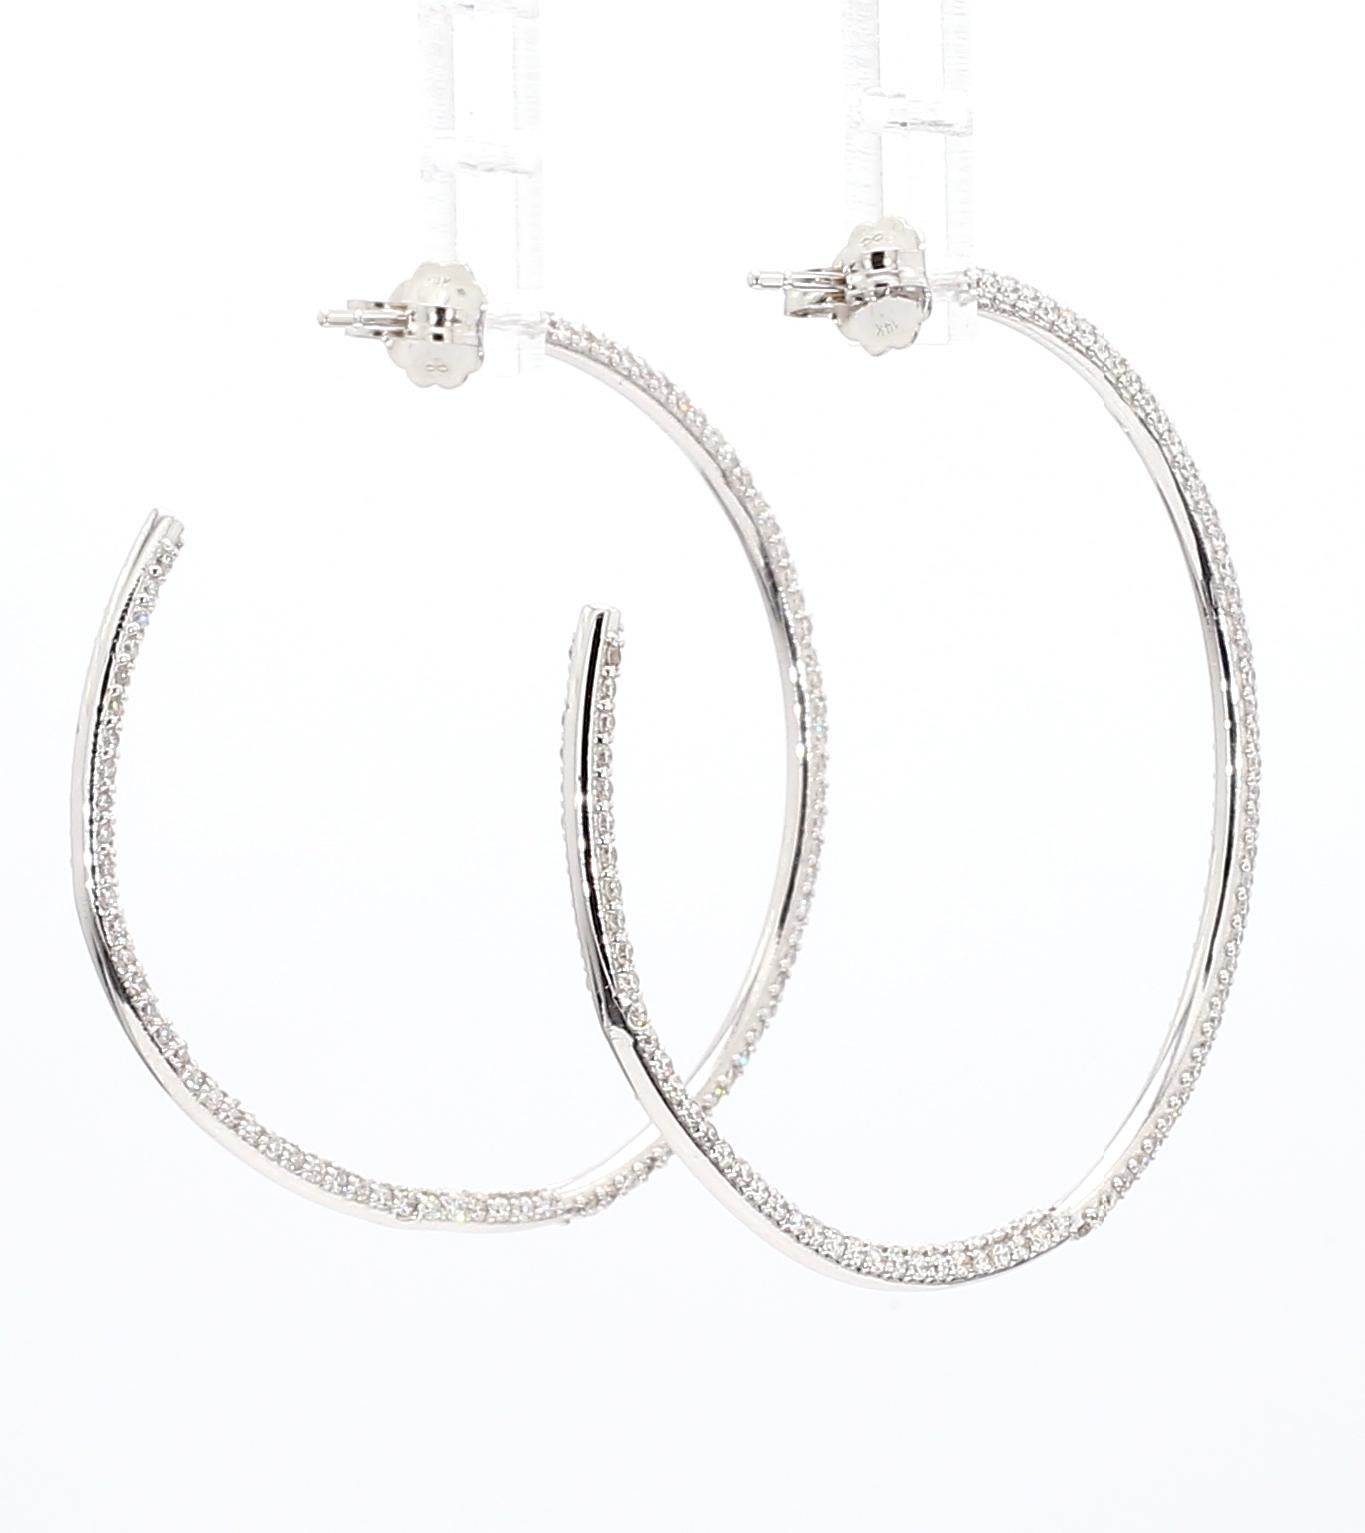 Natural Diamond Hoop Earrings 2.14ctw Inside Out Hoop Earrings Three Row 14K WG For Sale 2